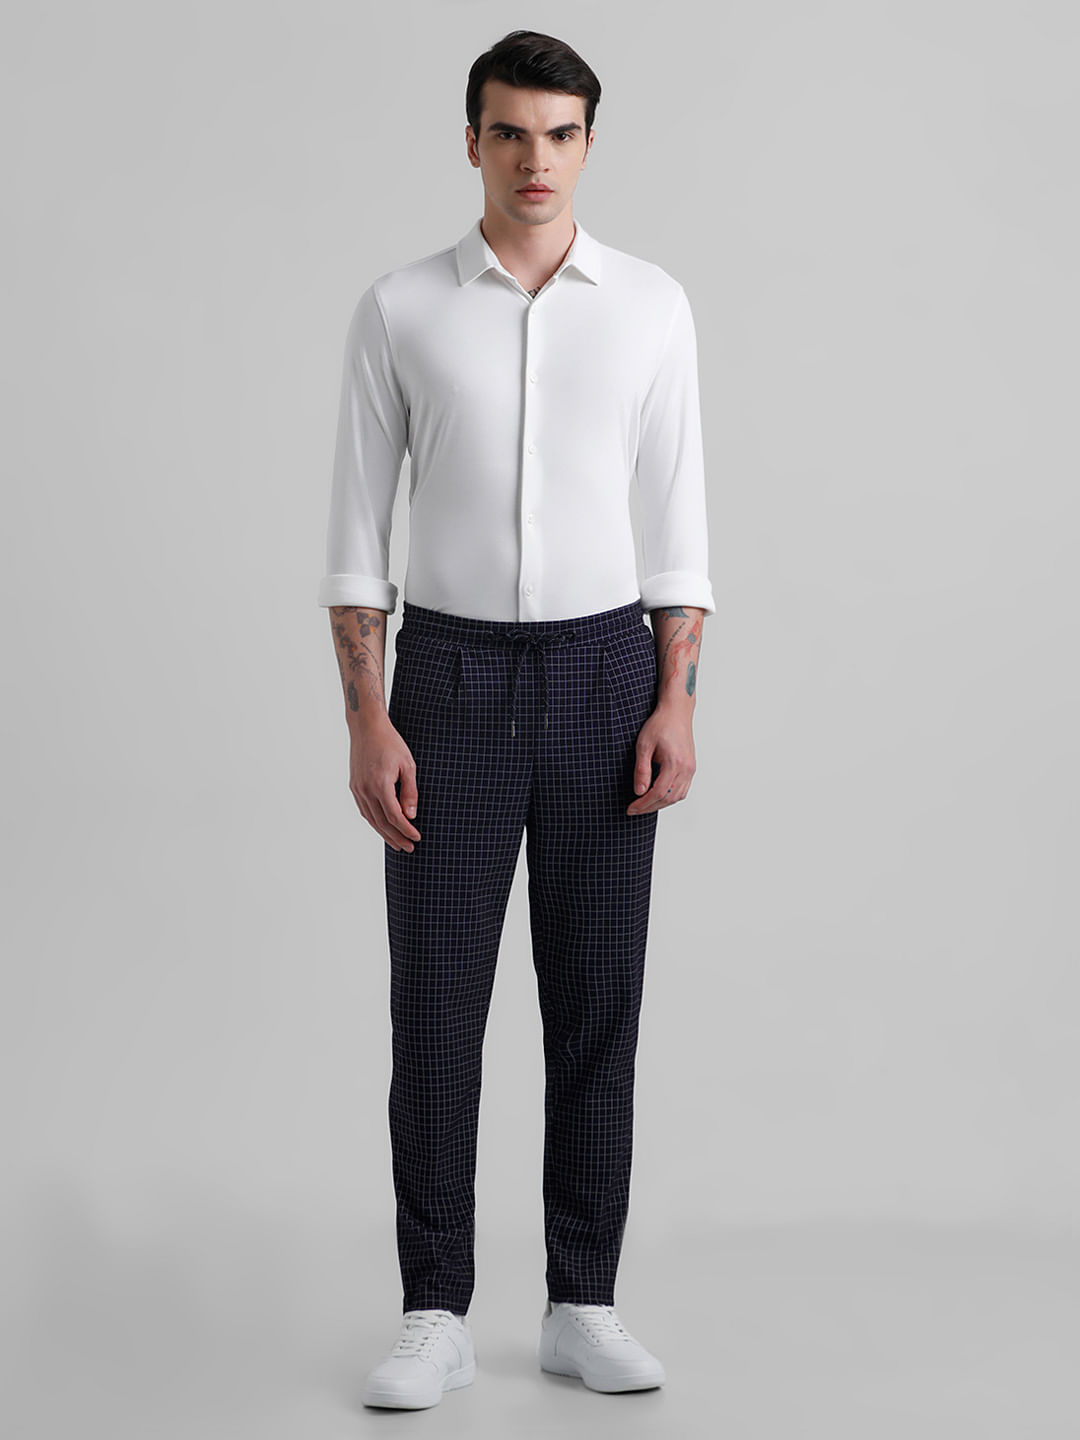 Men's viscose-blend linen shirt with striped pattern | Golden Goose